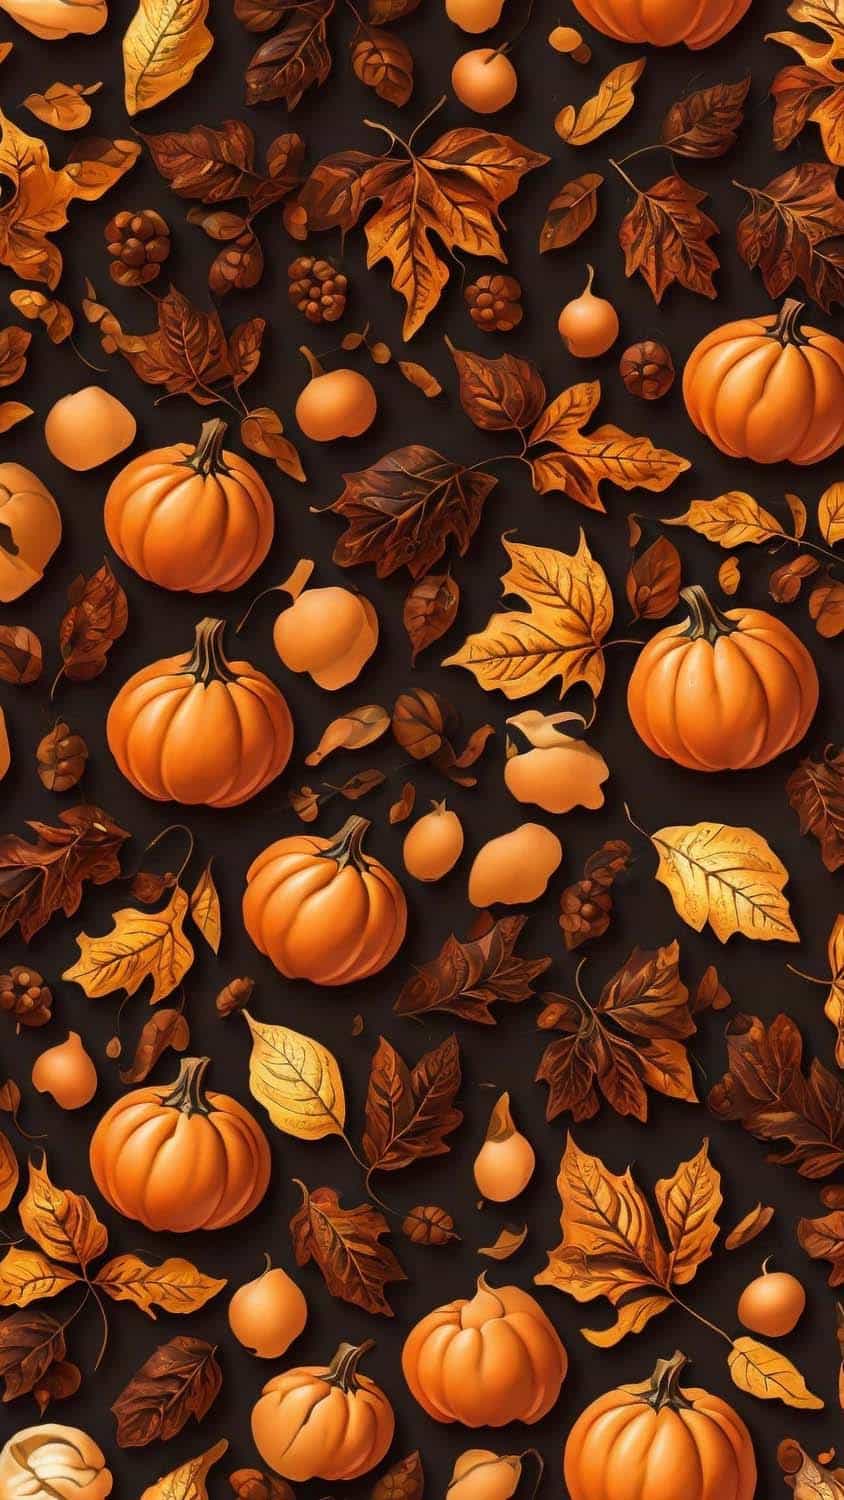 Pumpkin Patterns iPhone Wallpaper 4K